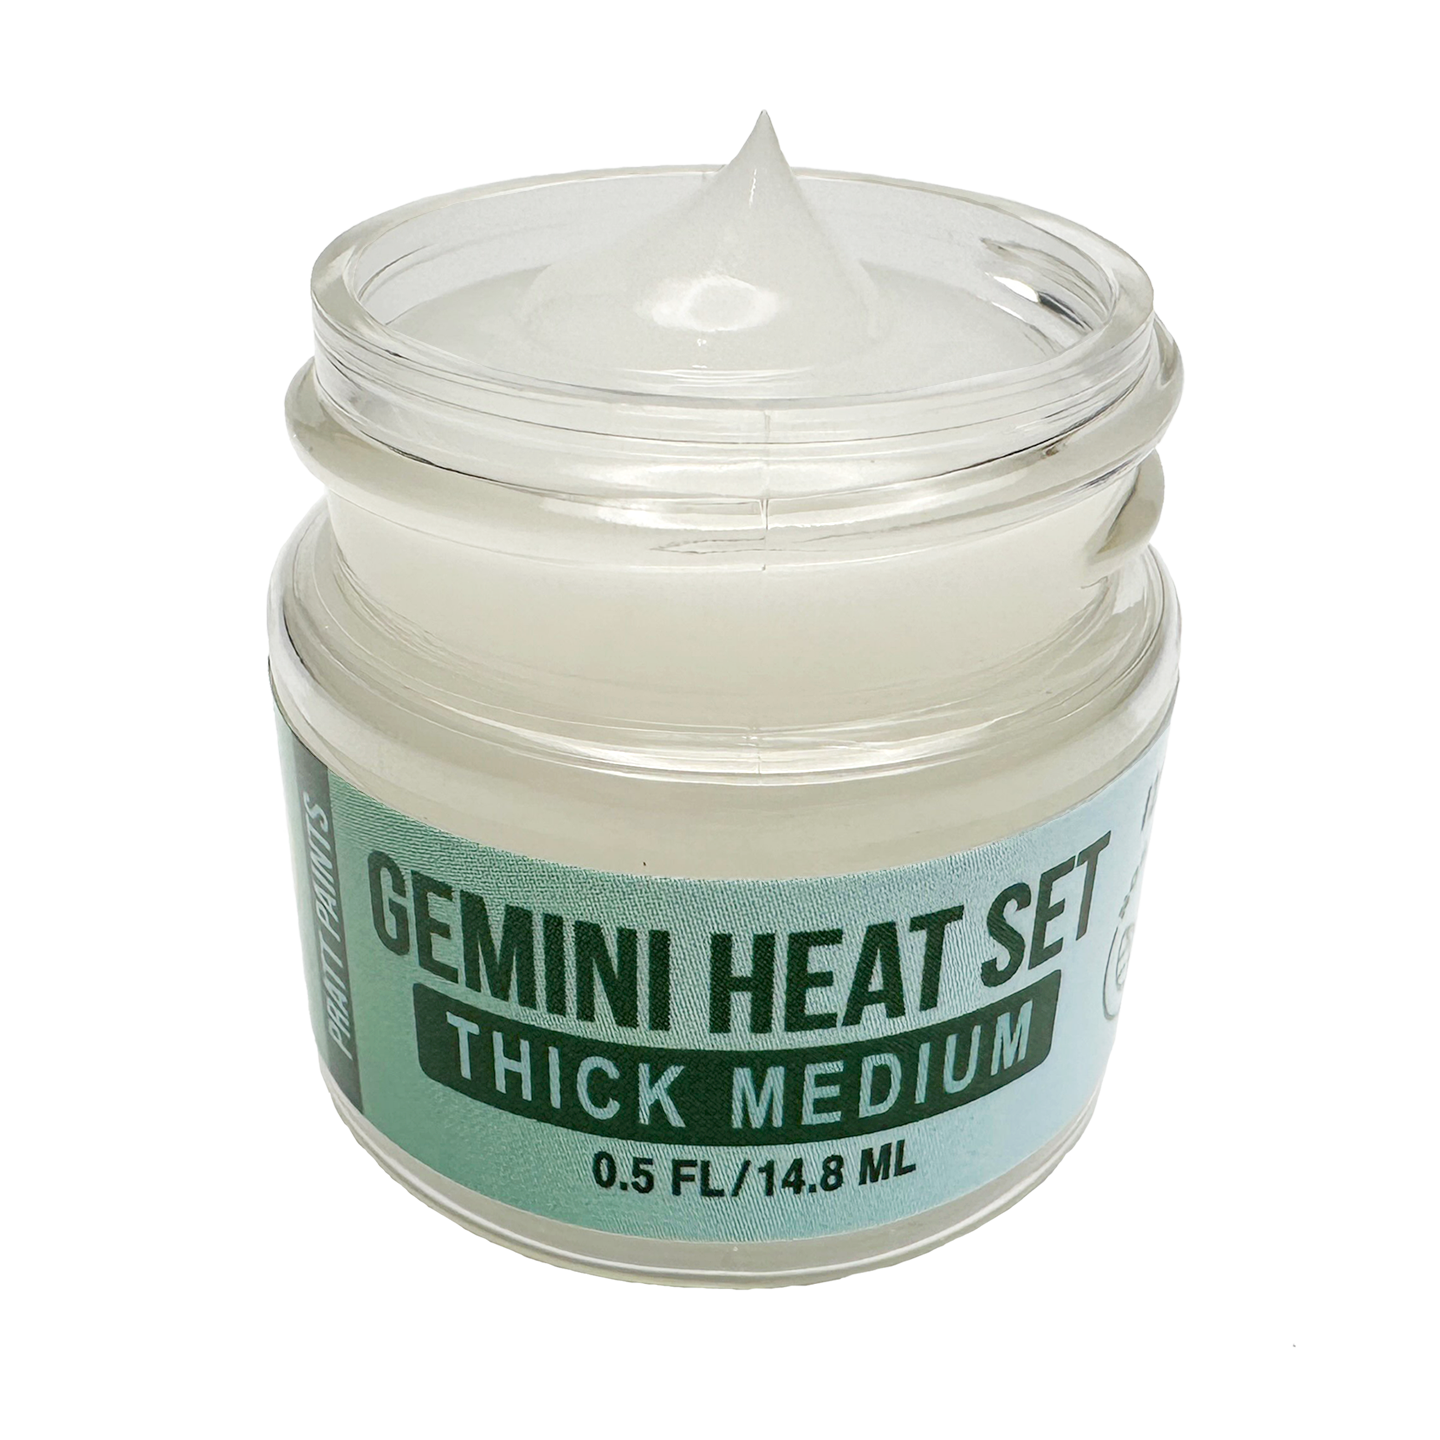 NEW! Thick Medium - Gemini Heat Set Paint - 22 grams #2345